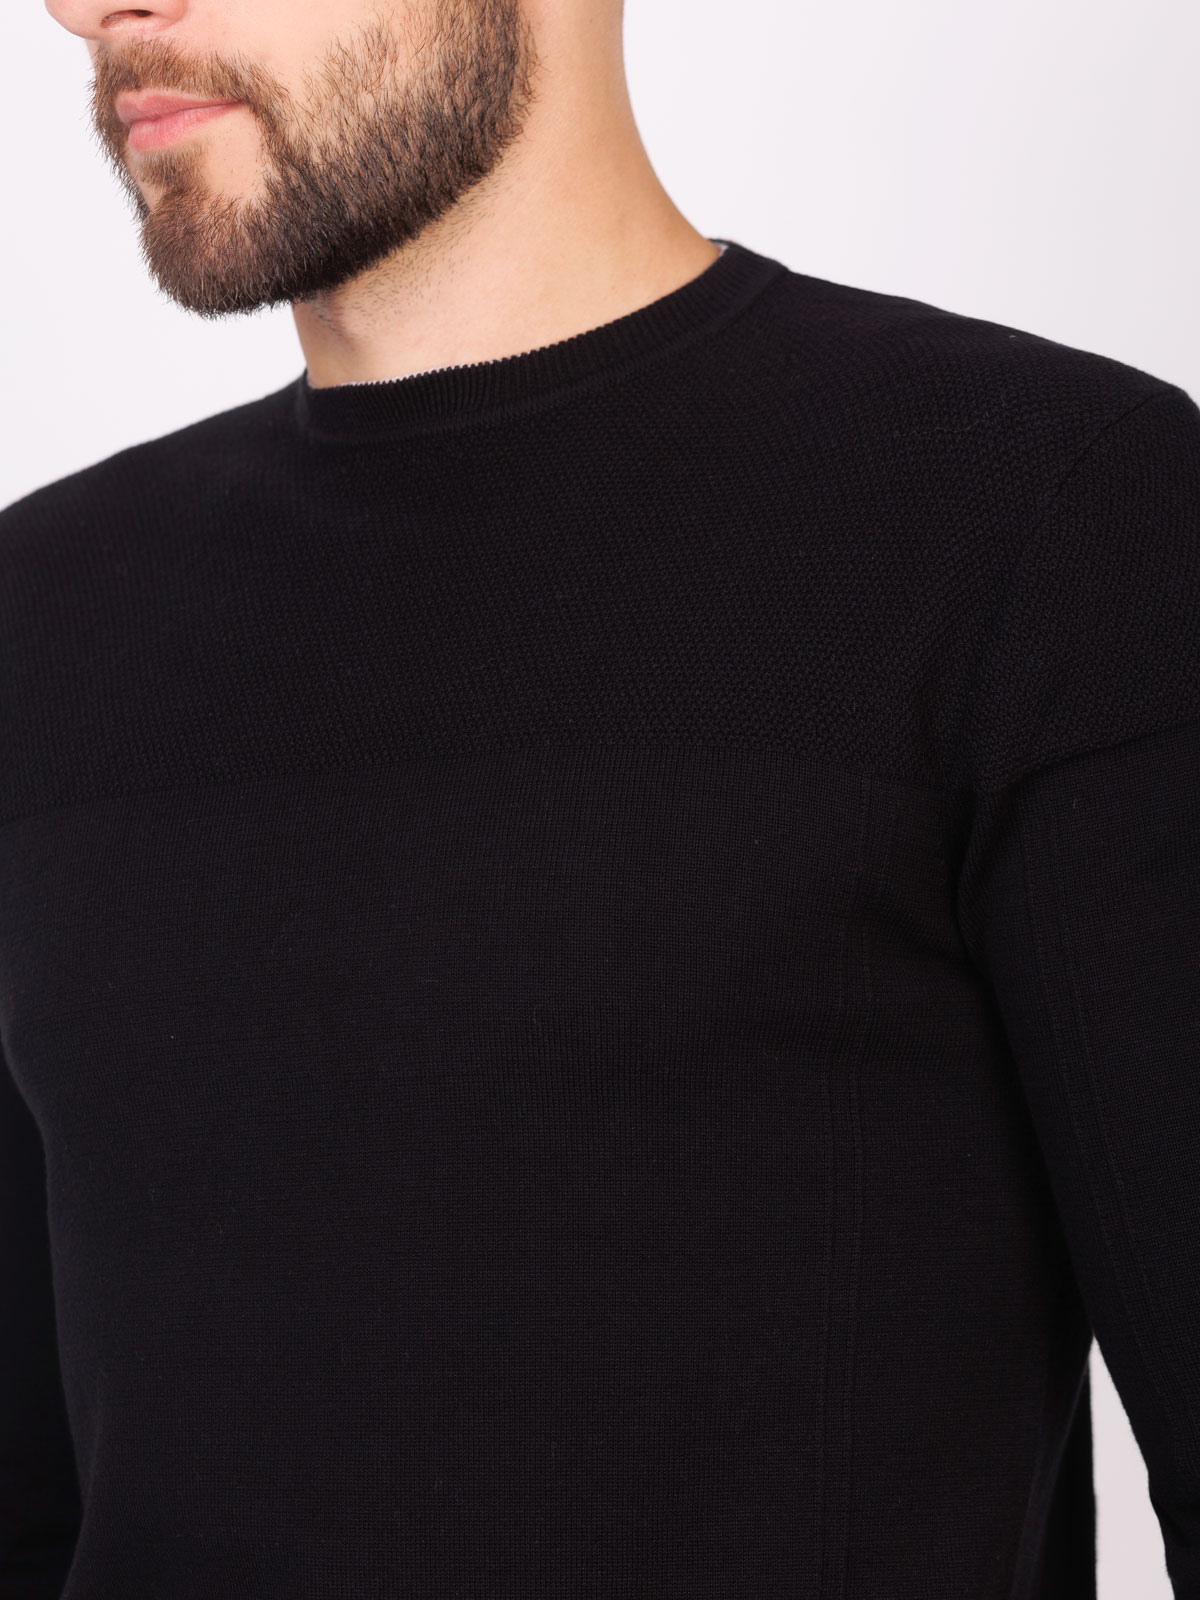 Ανδρική μπλούζα σε μαύρο χρώμα - 35290 € 39.93 img3